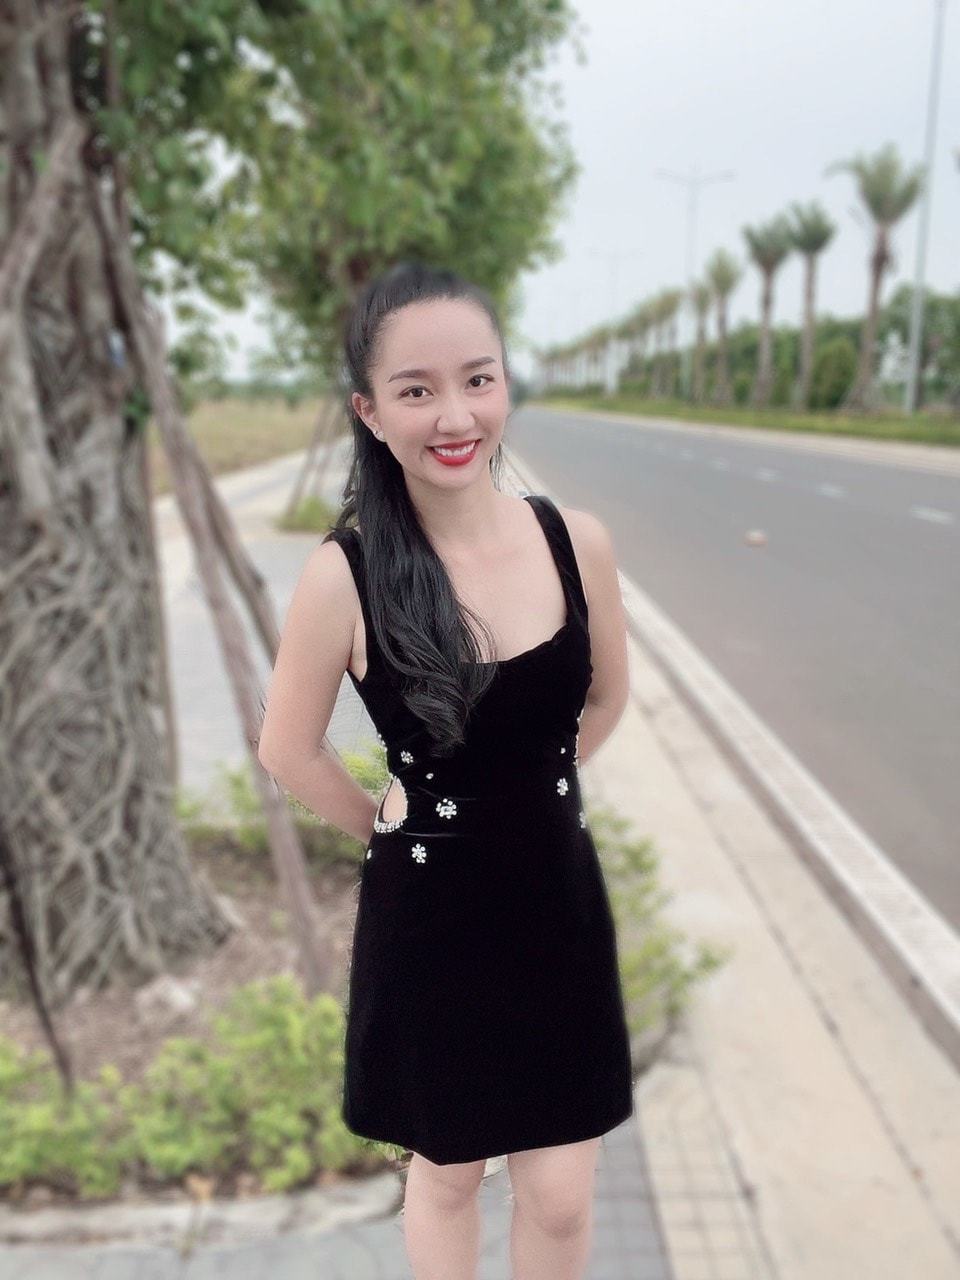  
Bà xã Lê Dương Bảo Lâm khoe body thon gọn trong chiếc váy bó sát quyến rũ. (Ảnh: Facebook Quỳnh Quỳnh)